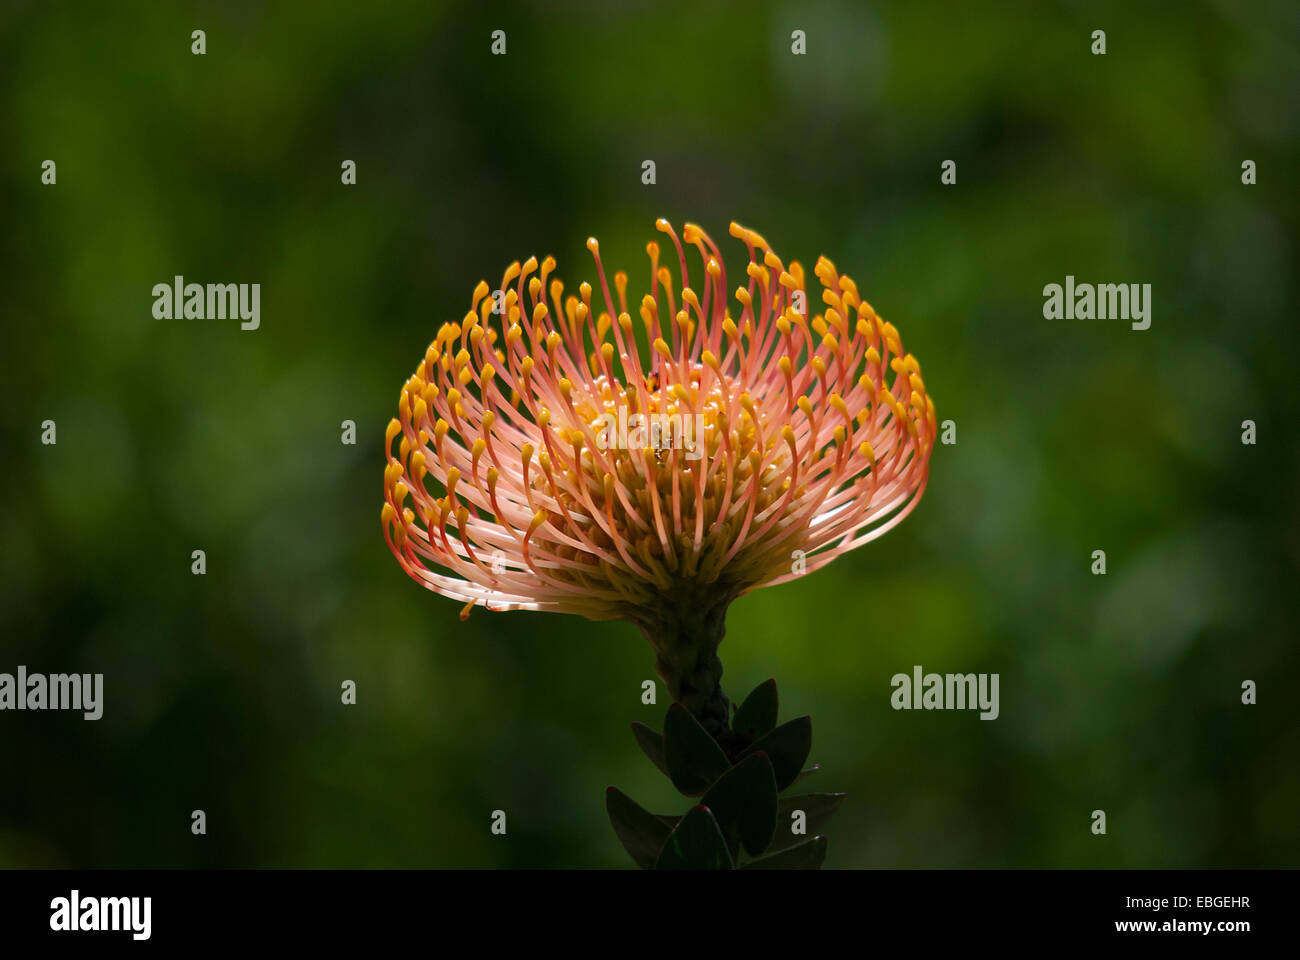 Protea flower taken in Kirstenbosch Gardens, Cape Town Stock Photo